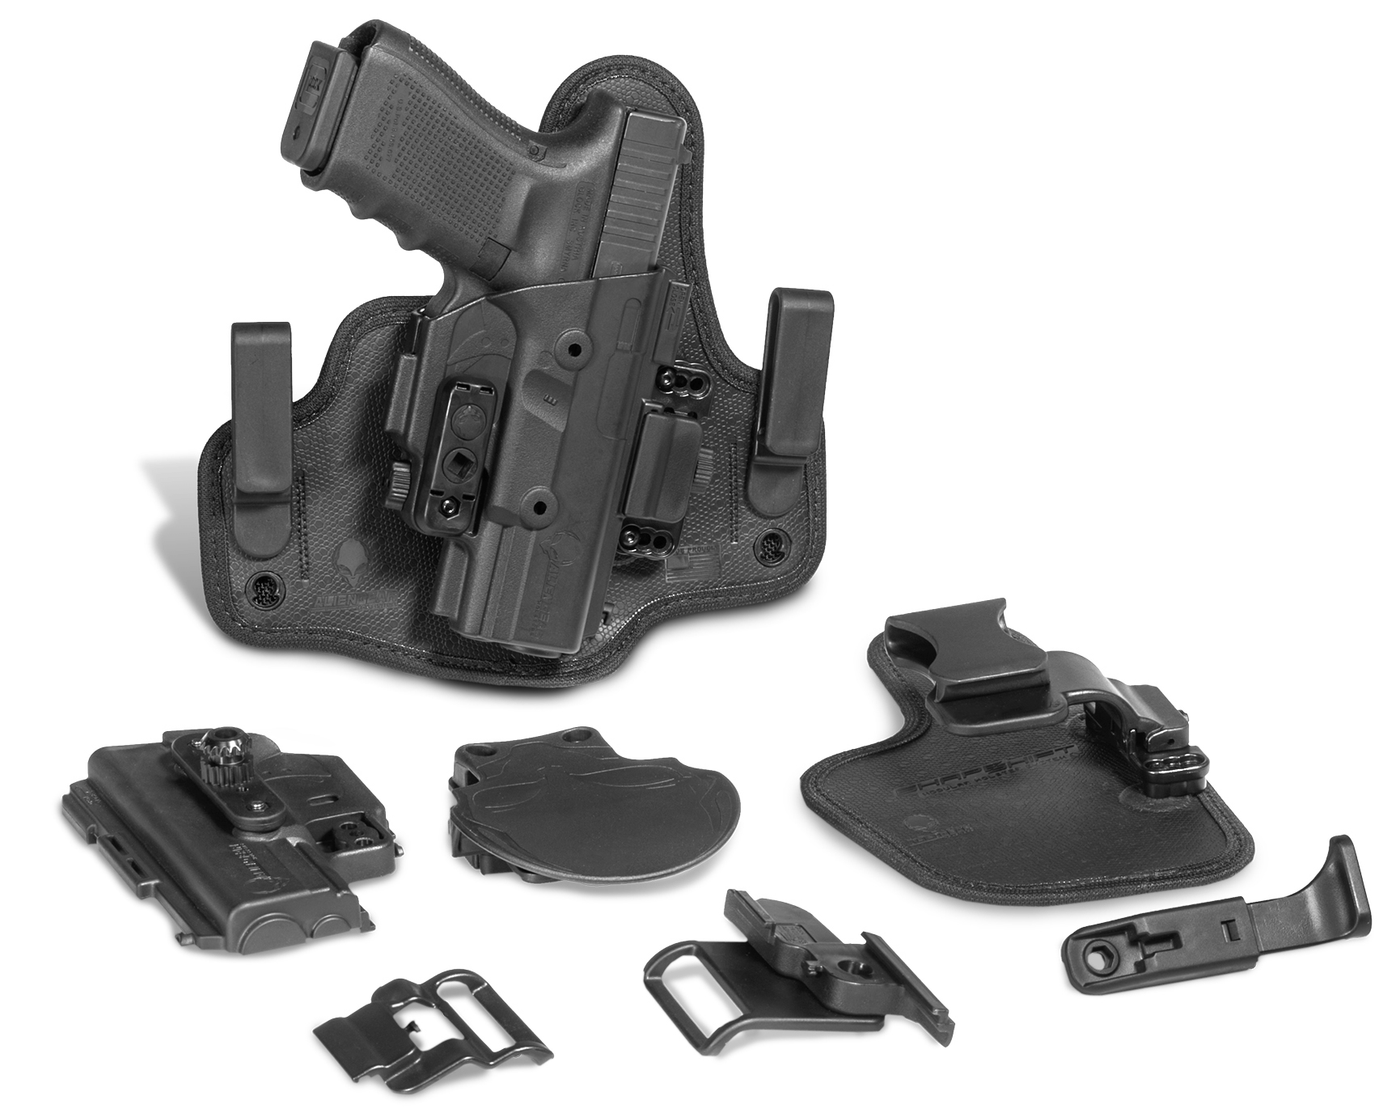 ALIEN GEAR HOLSTERS Alien Gear Core Carry Kit S&w M&p Shield 2.0 9mm Right Hand Firearm Accessories